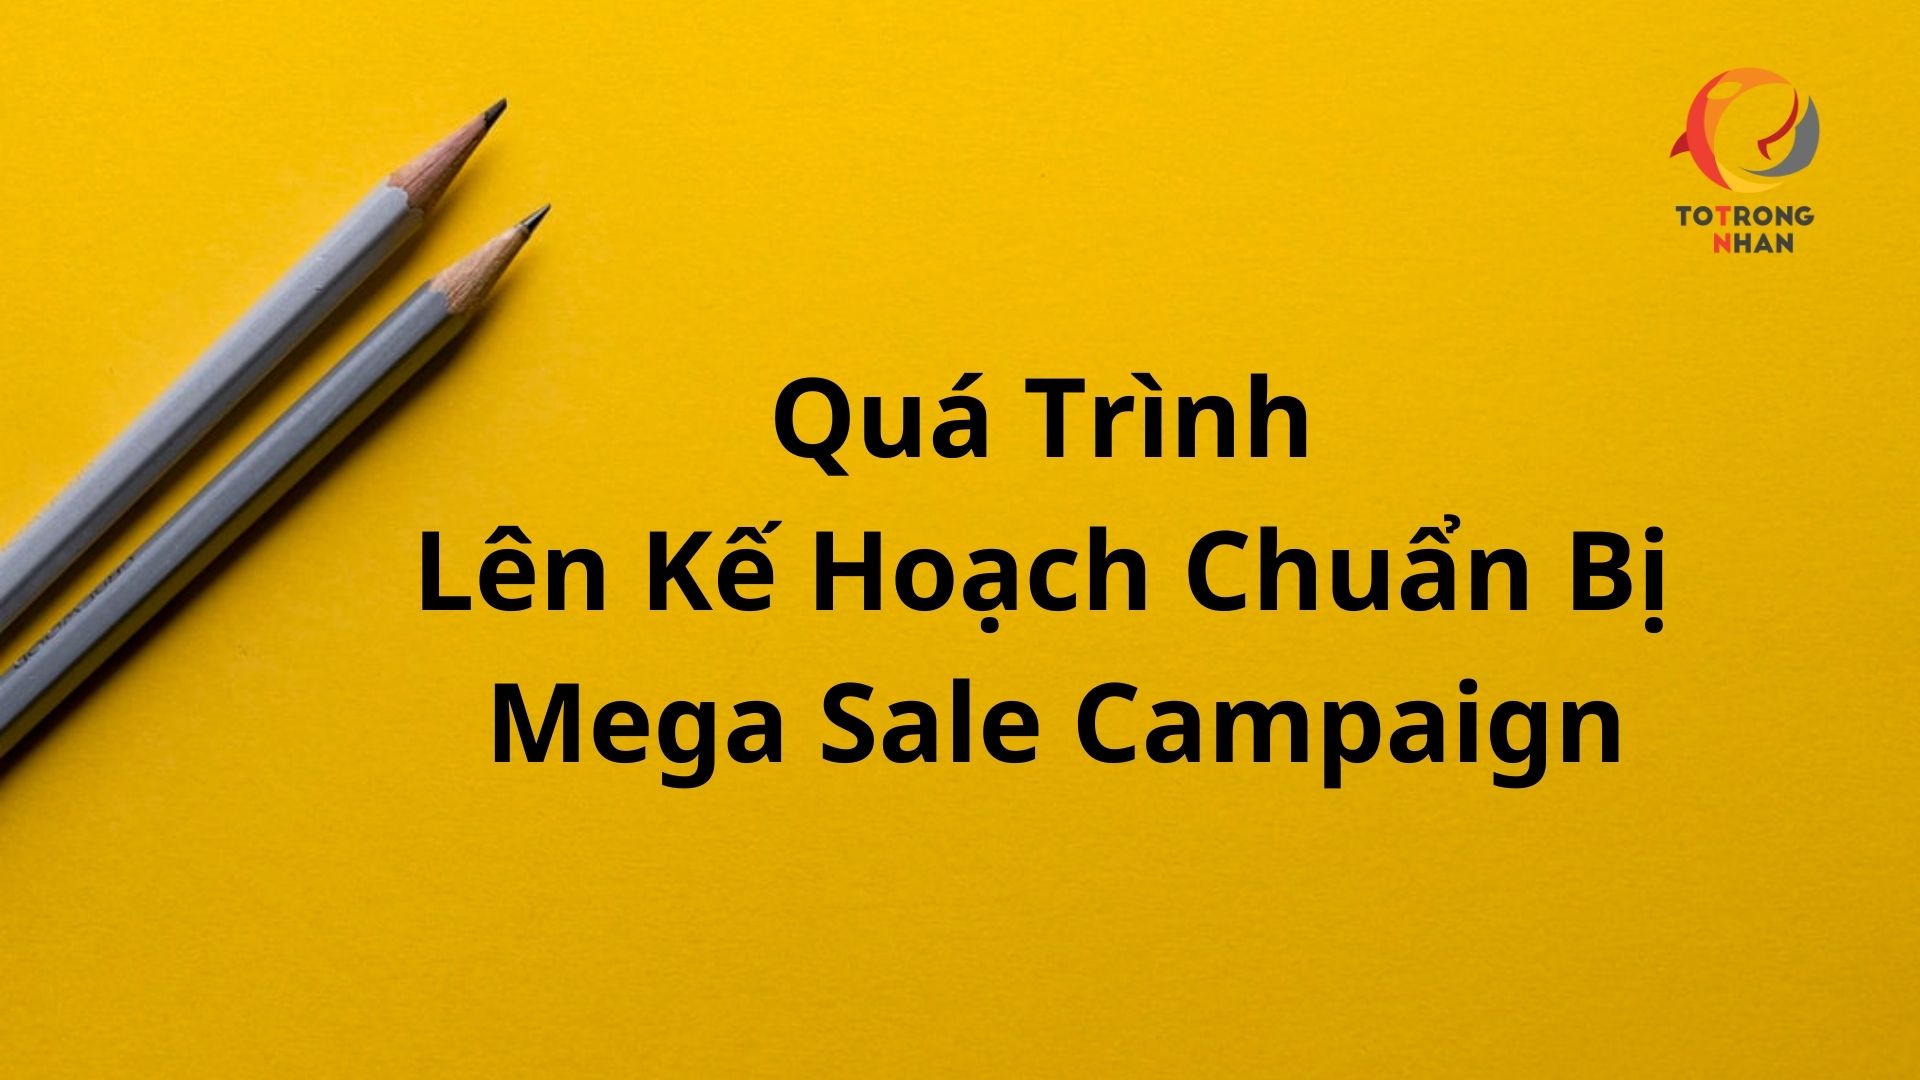 Photo of Note Về Quá Trình Lên Kế Hoạch Chuẩn Bị Mega Sale Campaign